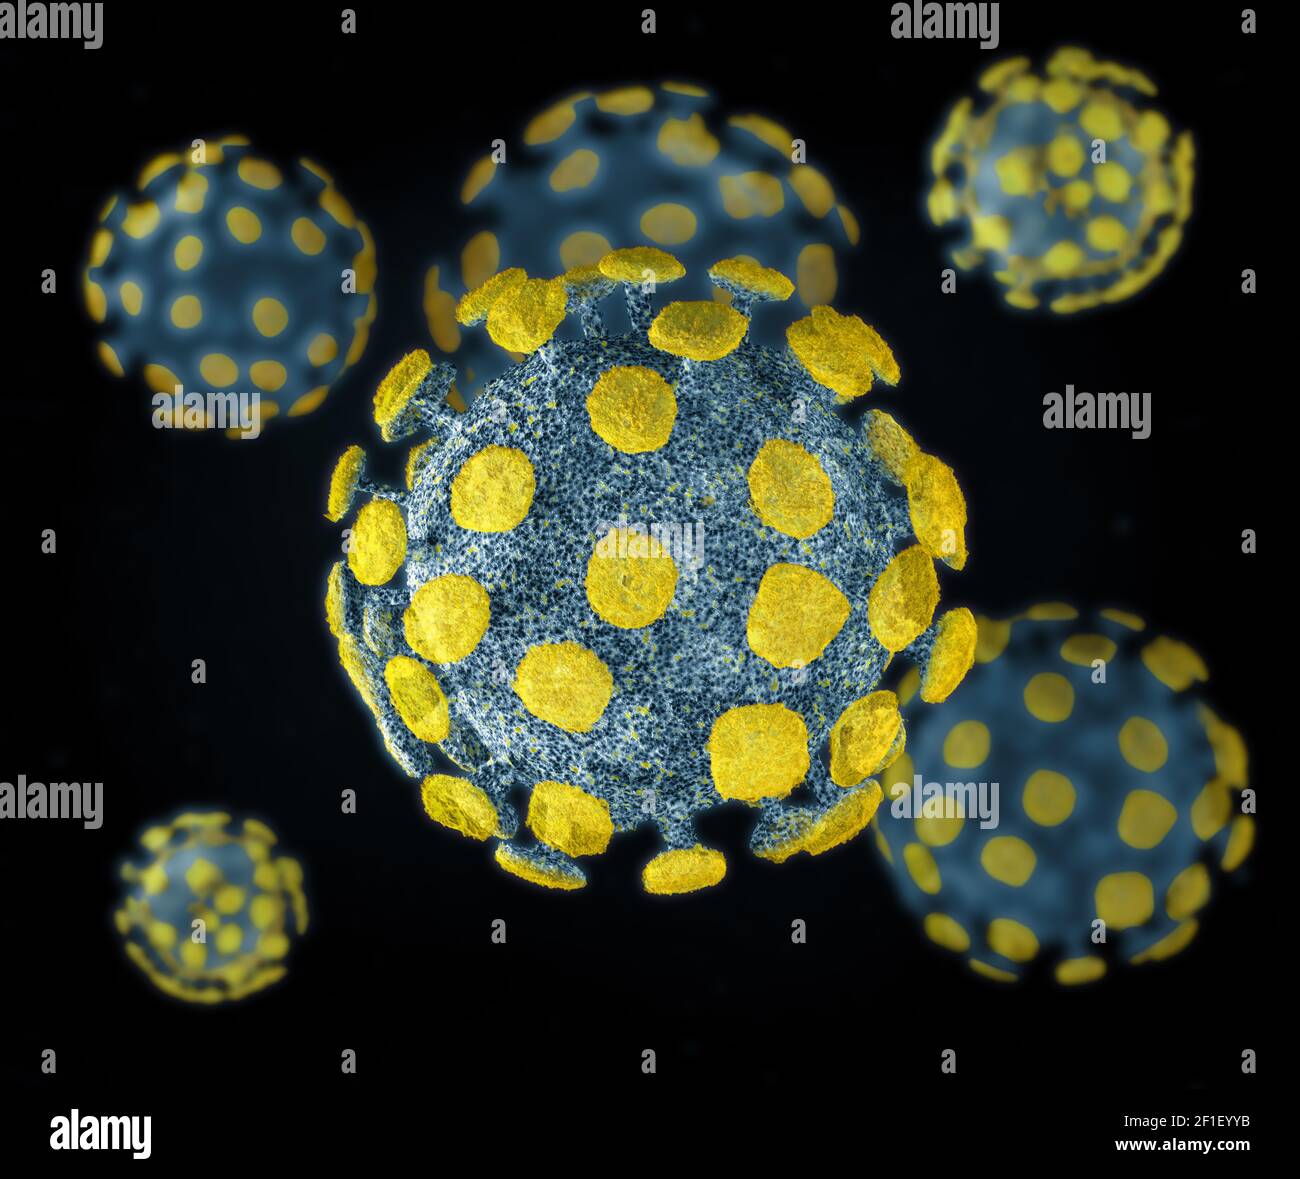 Microscopio estilize la foto del coronavirus COVID-19, SARS-CoV-2 conept Foto de stock